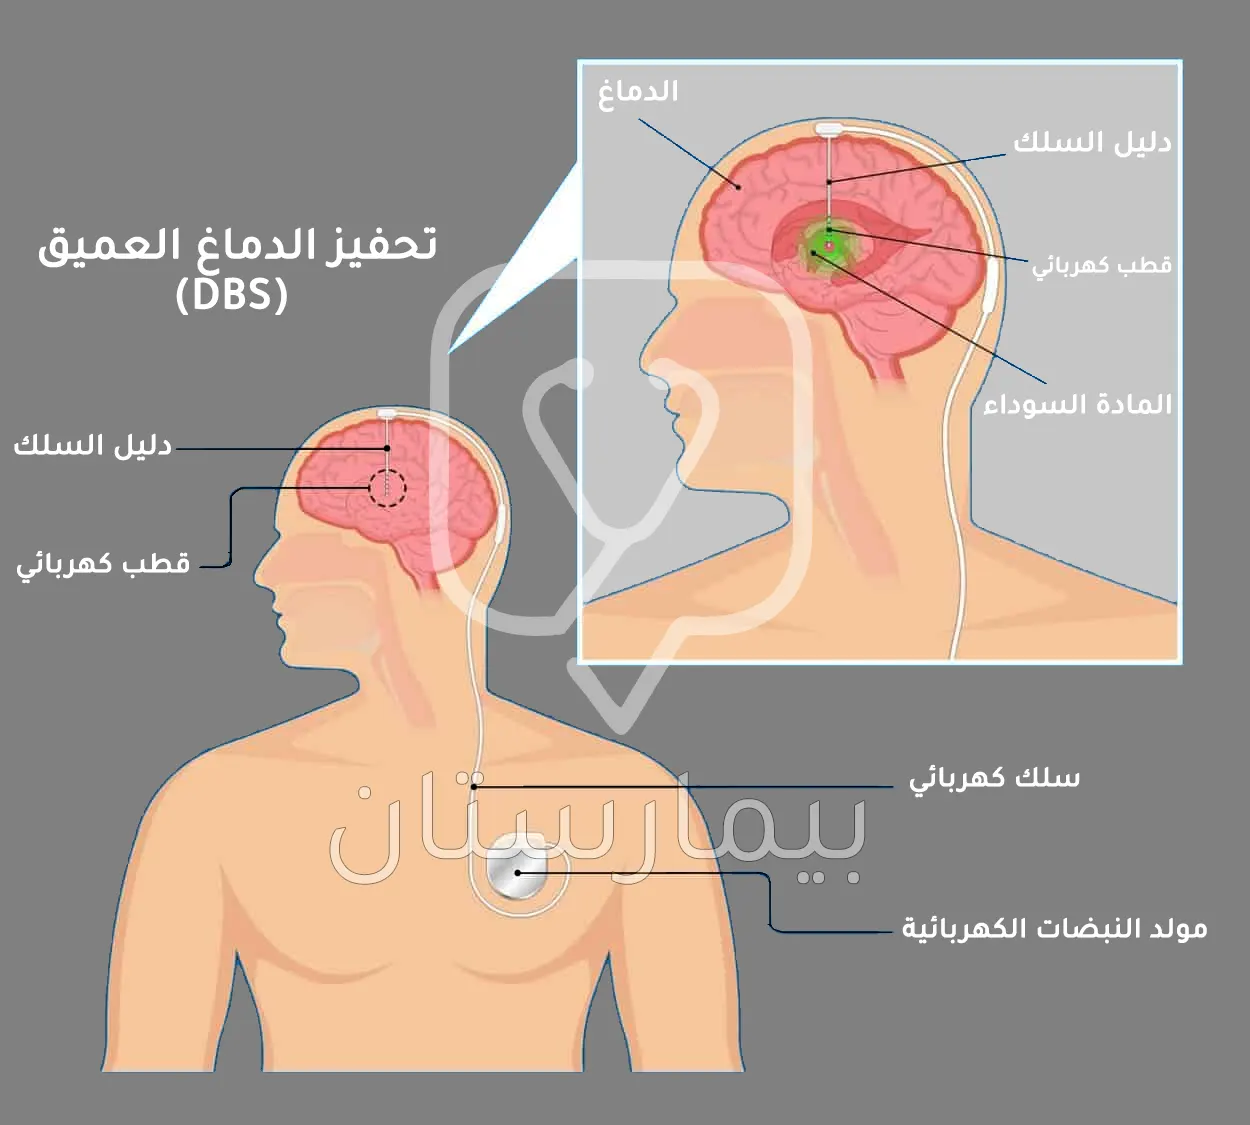 صورة تتحدث عن علاج مرض باركنسون عبر تحفيز الدماغ العميق في تركيا